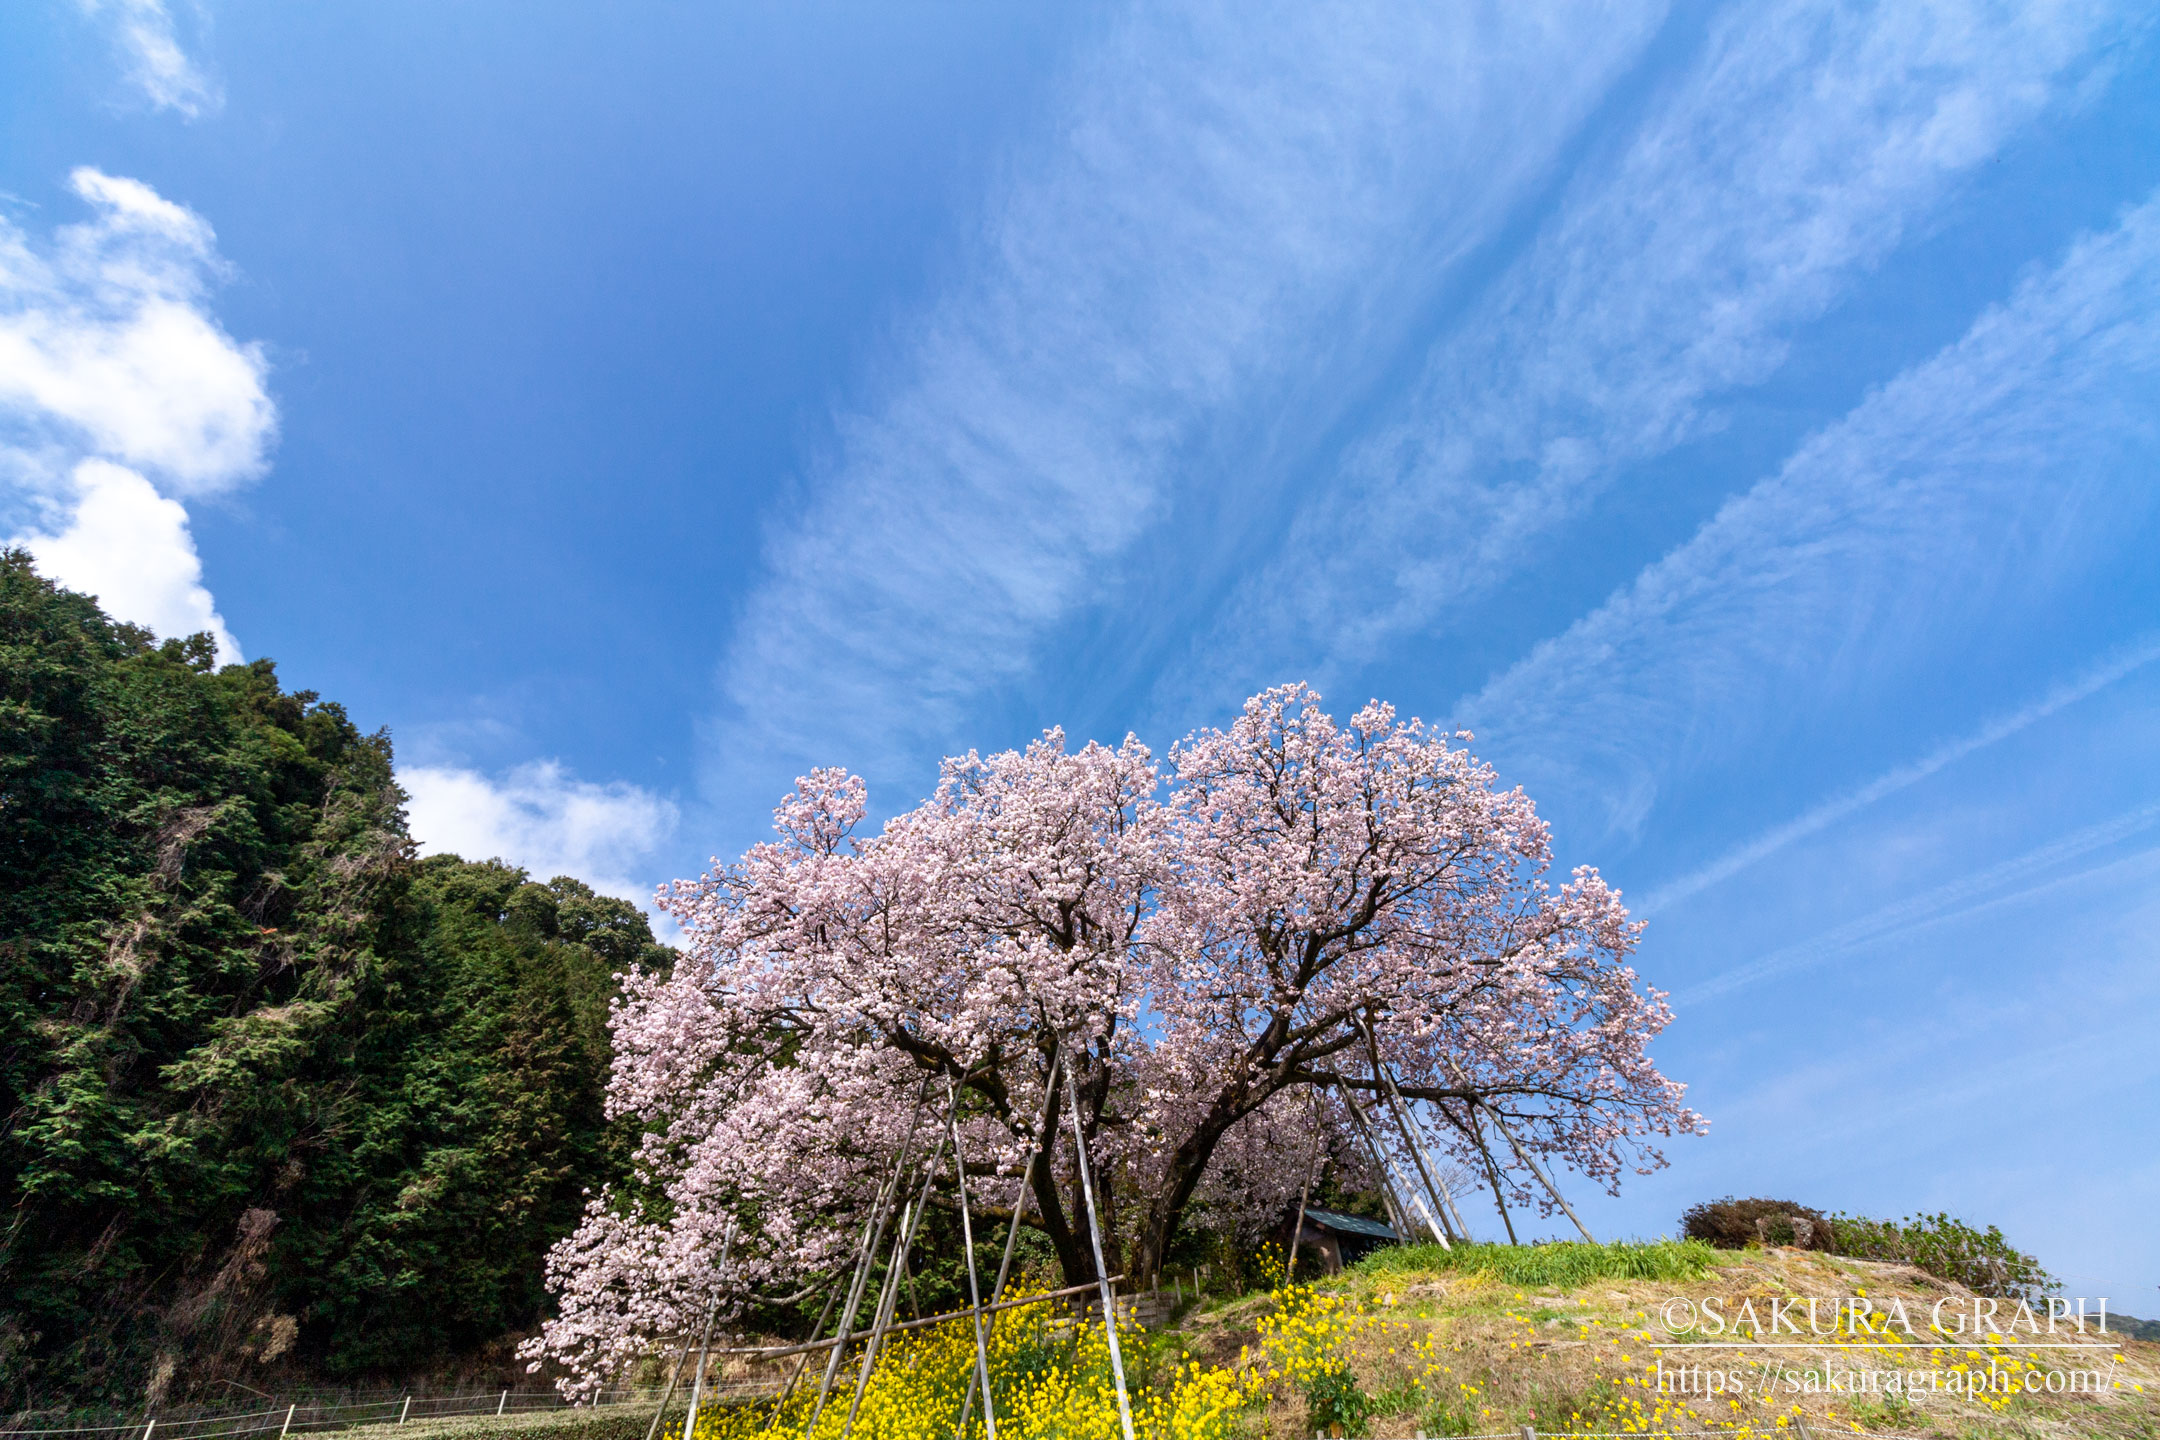 納戸料の百年桜 Sakuragraph